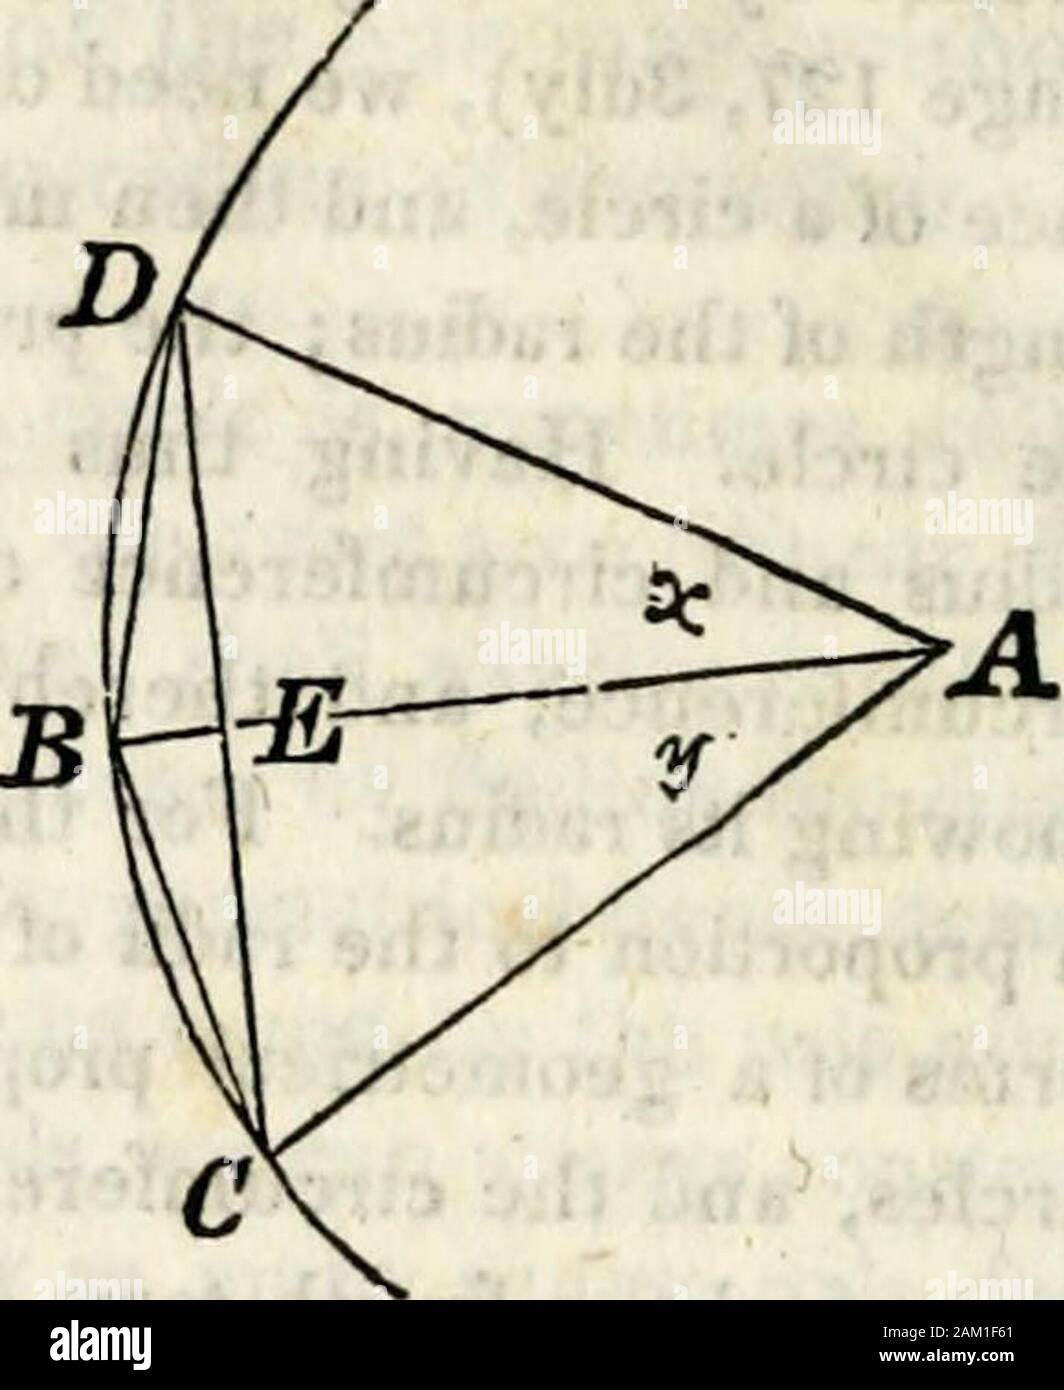 Un tratado de geometría elemental : simplificado para los principiantes que  no versados en álgebra . radio es dado; y conociendo la circunferencia y  theradius, podemos encontrar el área del círculo. Para